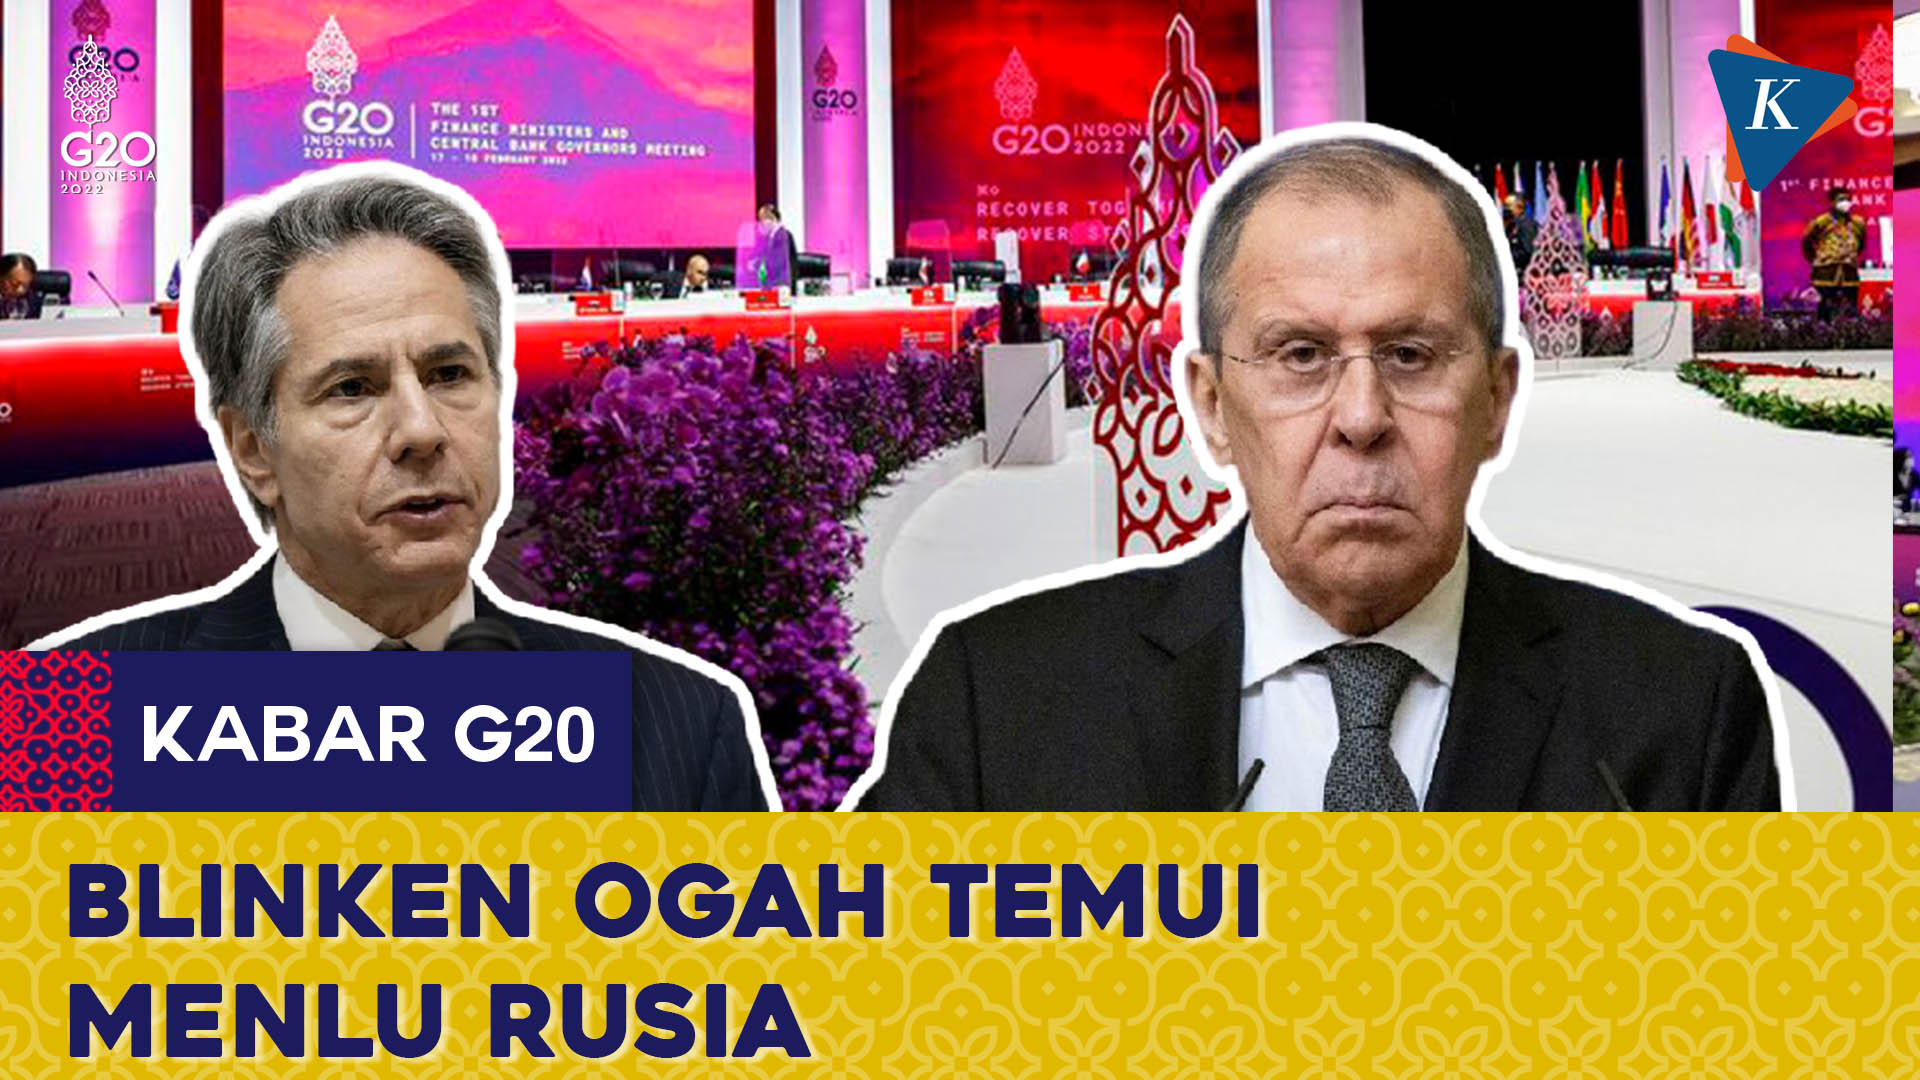 Blinken Ogah Temui Menlu Rusia di G20